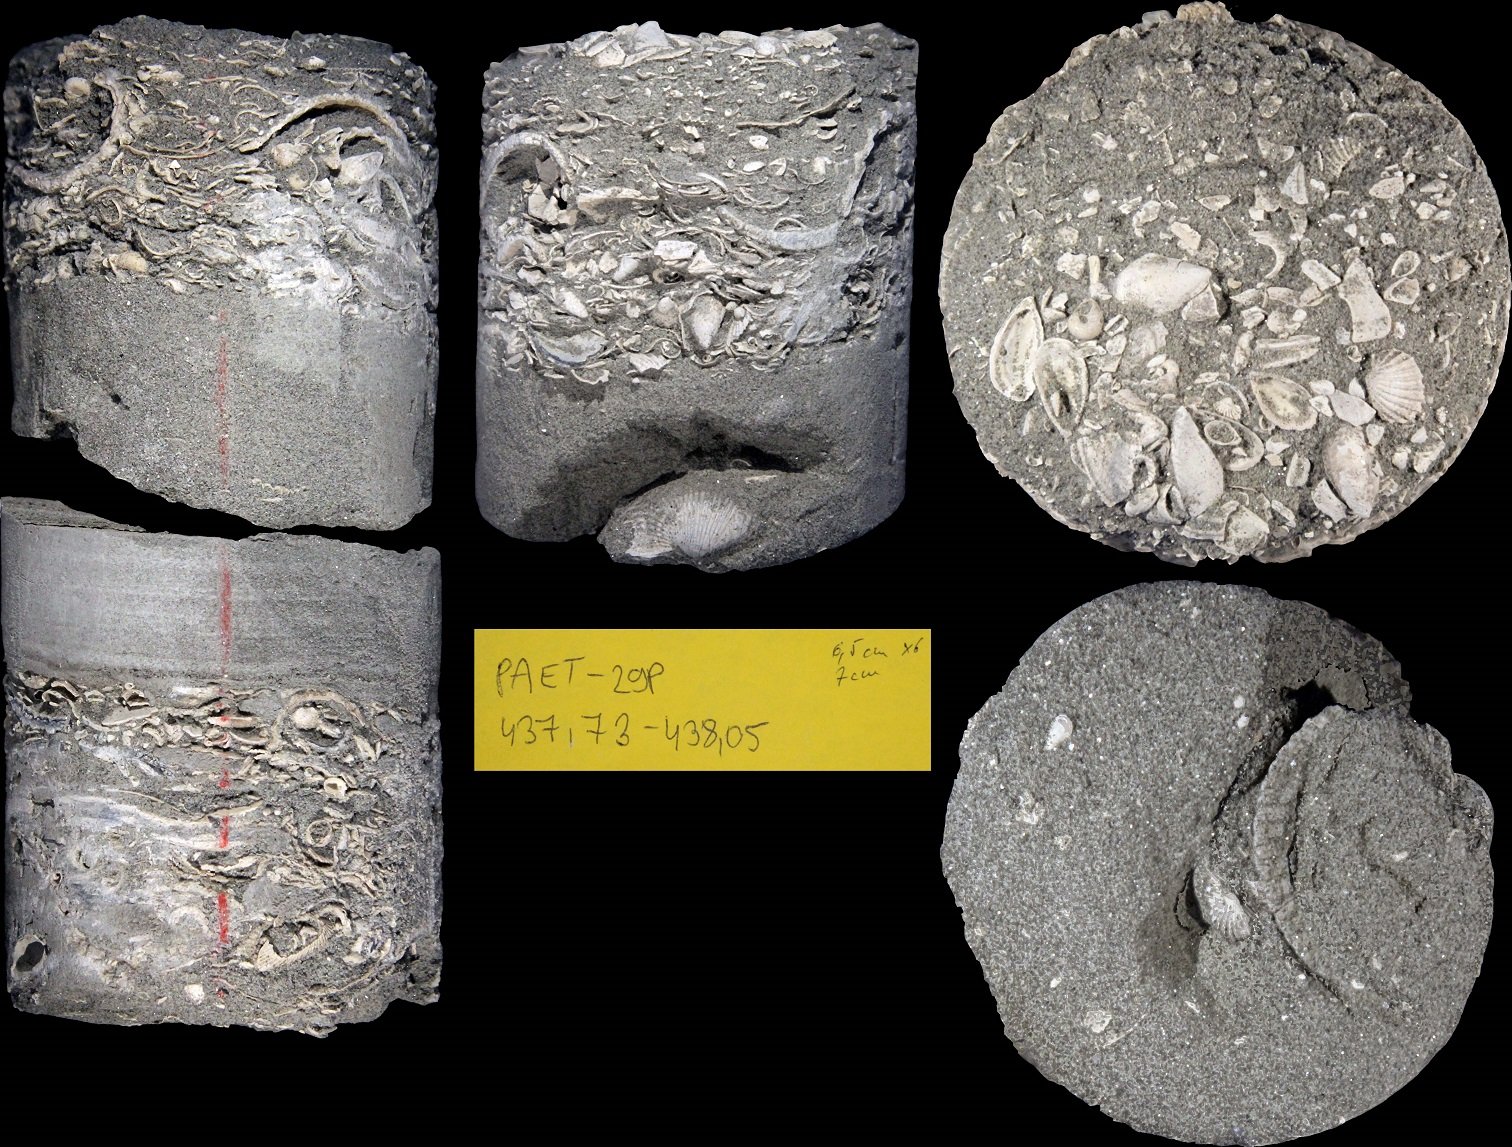 Fosili školjki i puževa u naslagama jezera Panon, ponađeni na dubini od 438 metara iz bušotine u gradu Pakšu, centralna Mađarska.